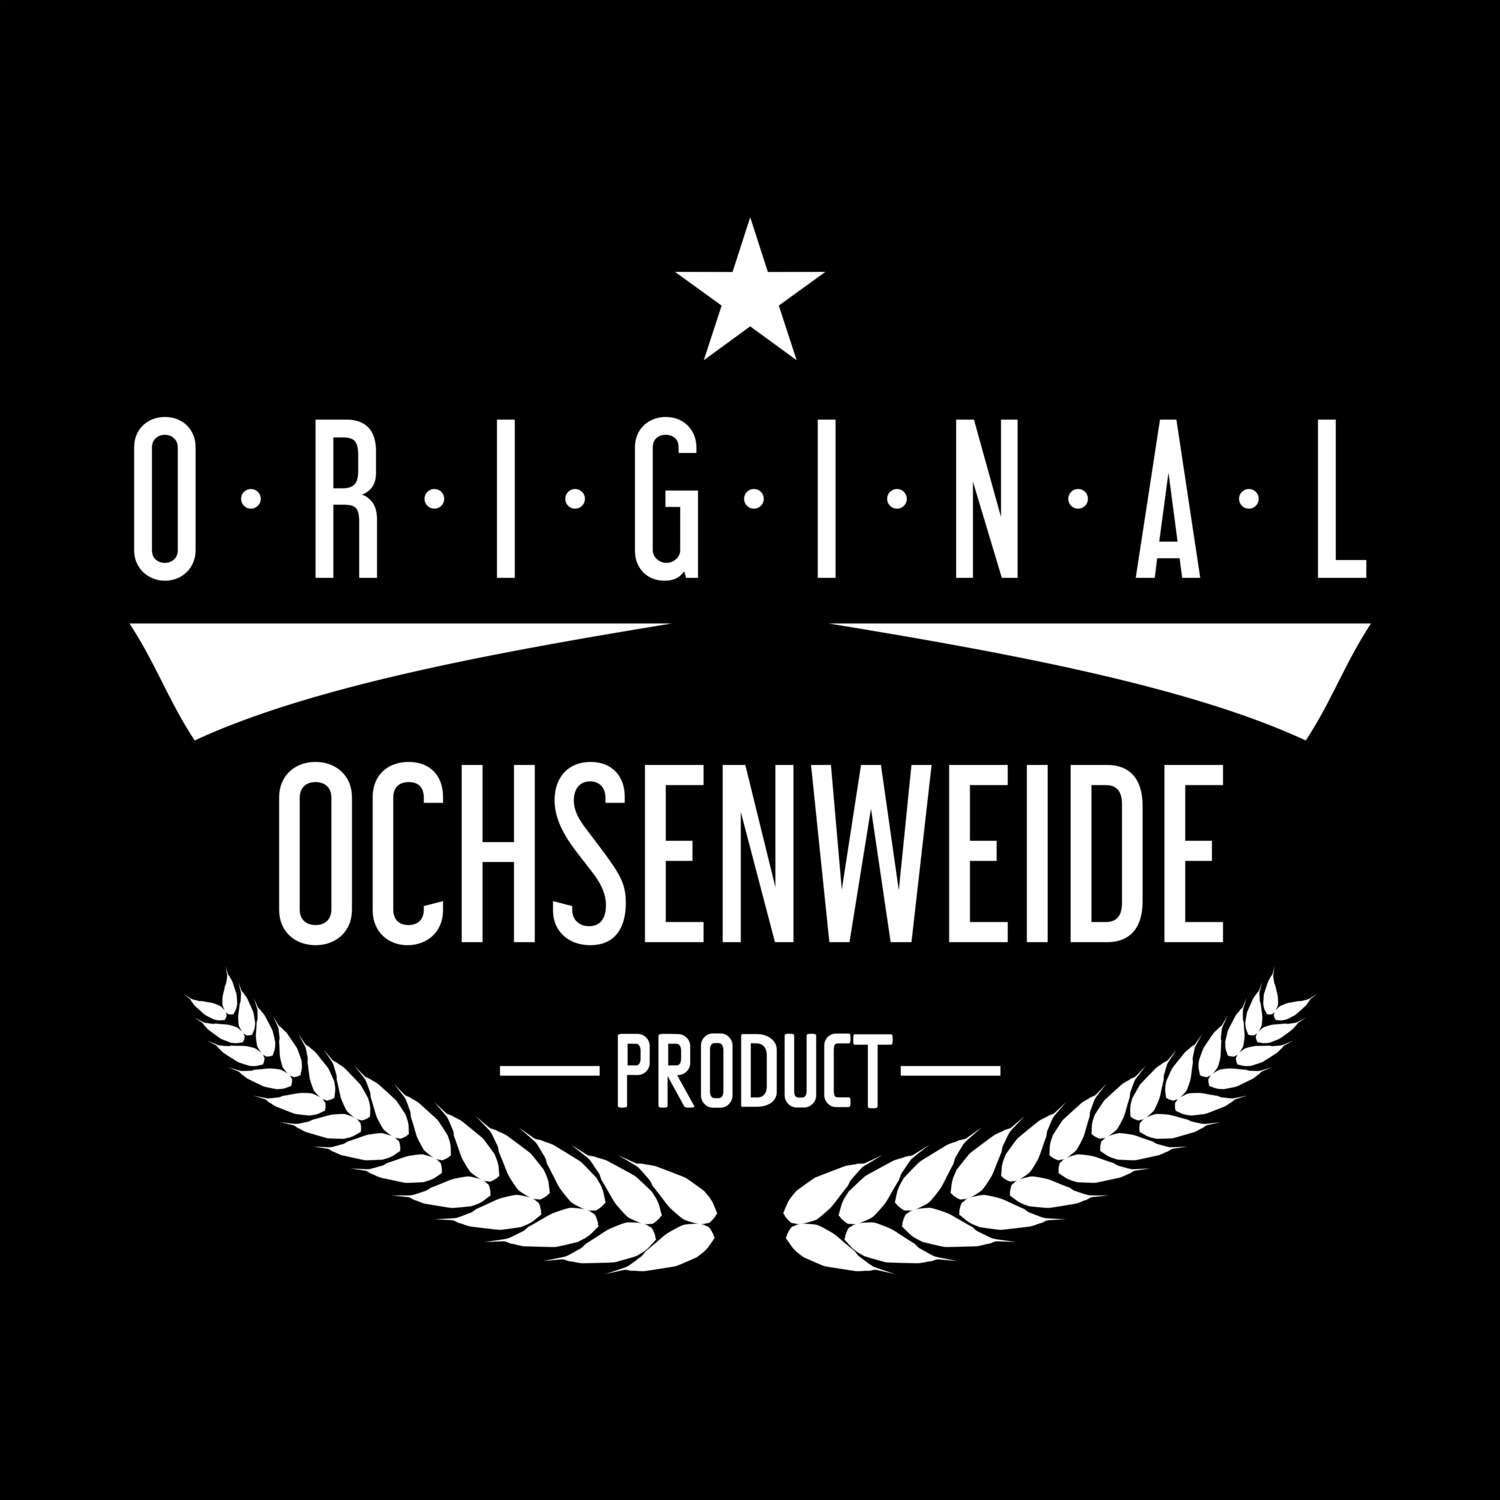 Ochsenweide T-Shirt »Original Product«